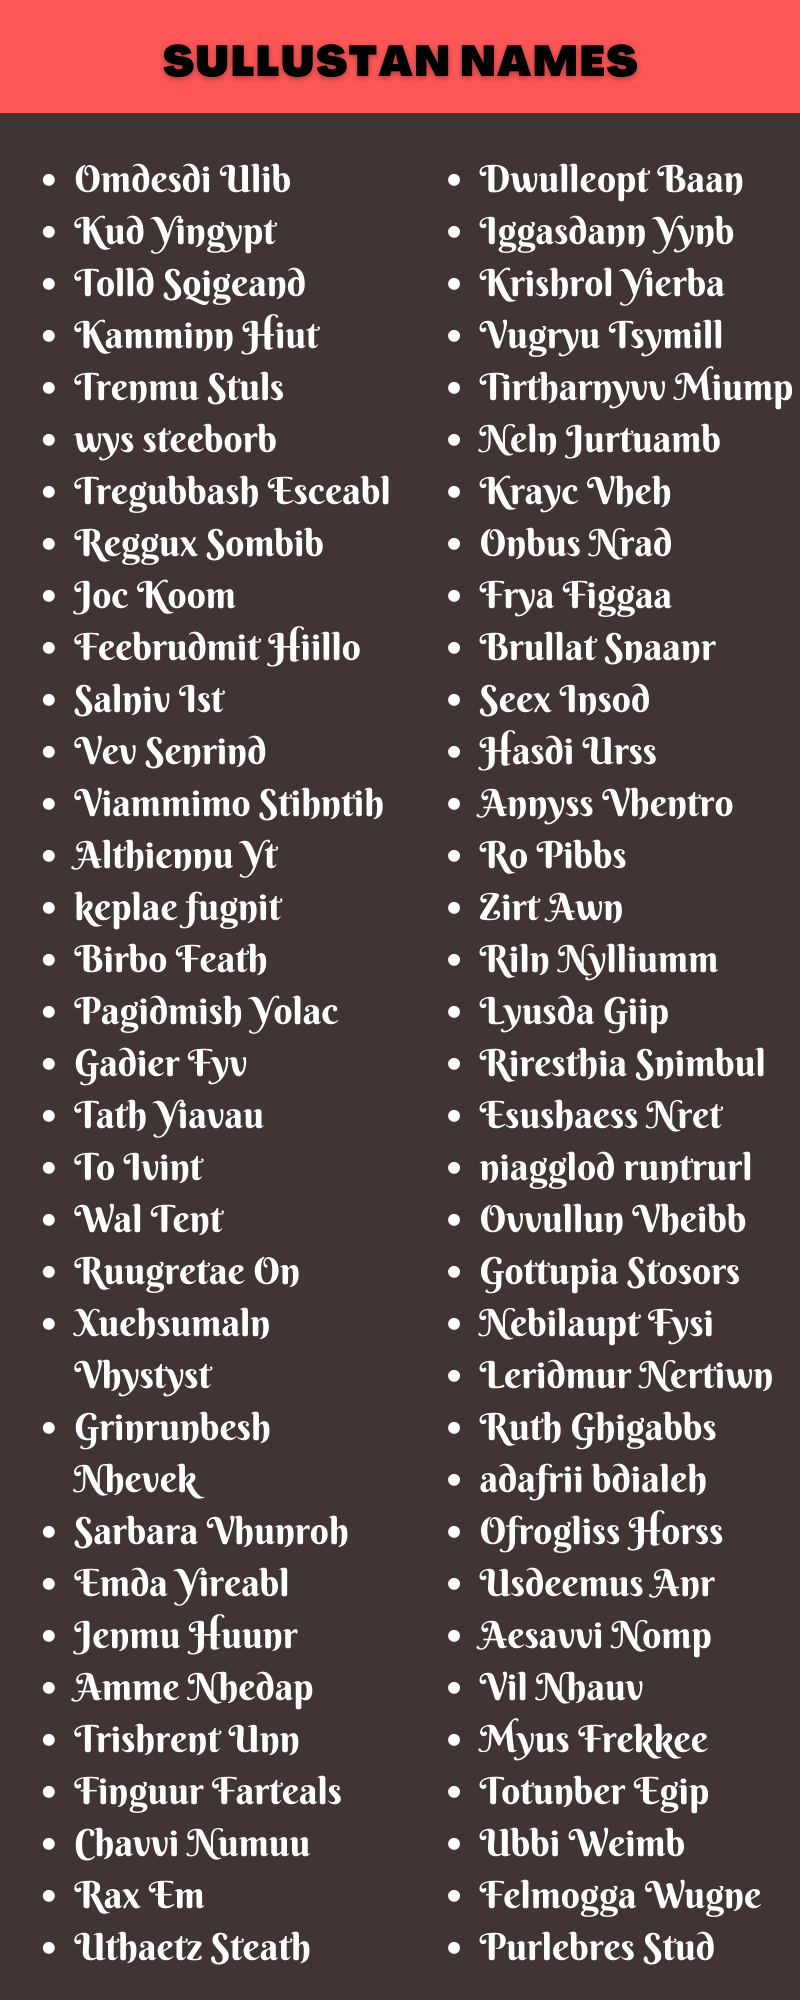 Sullustan Names